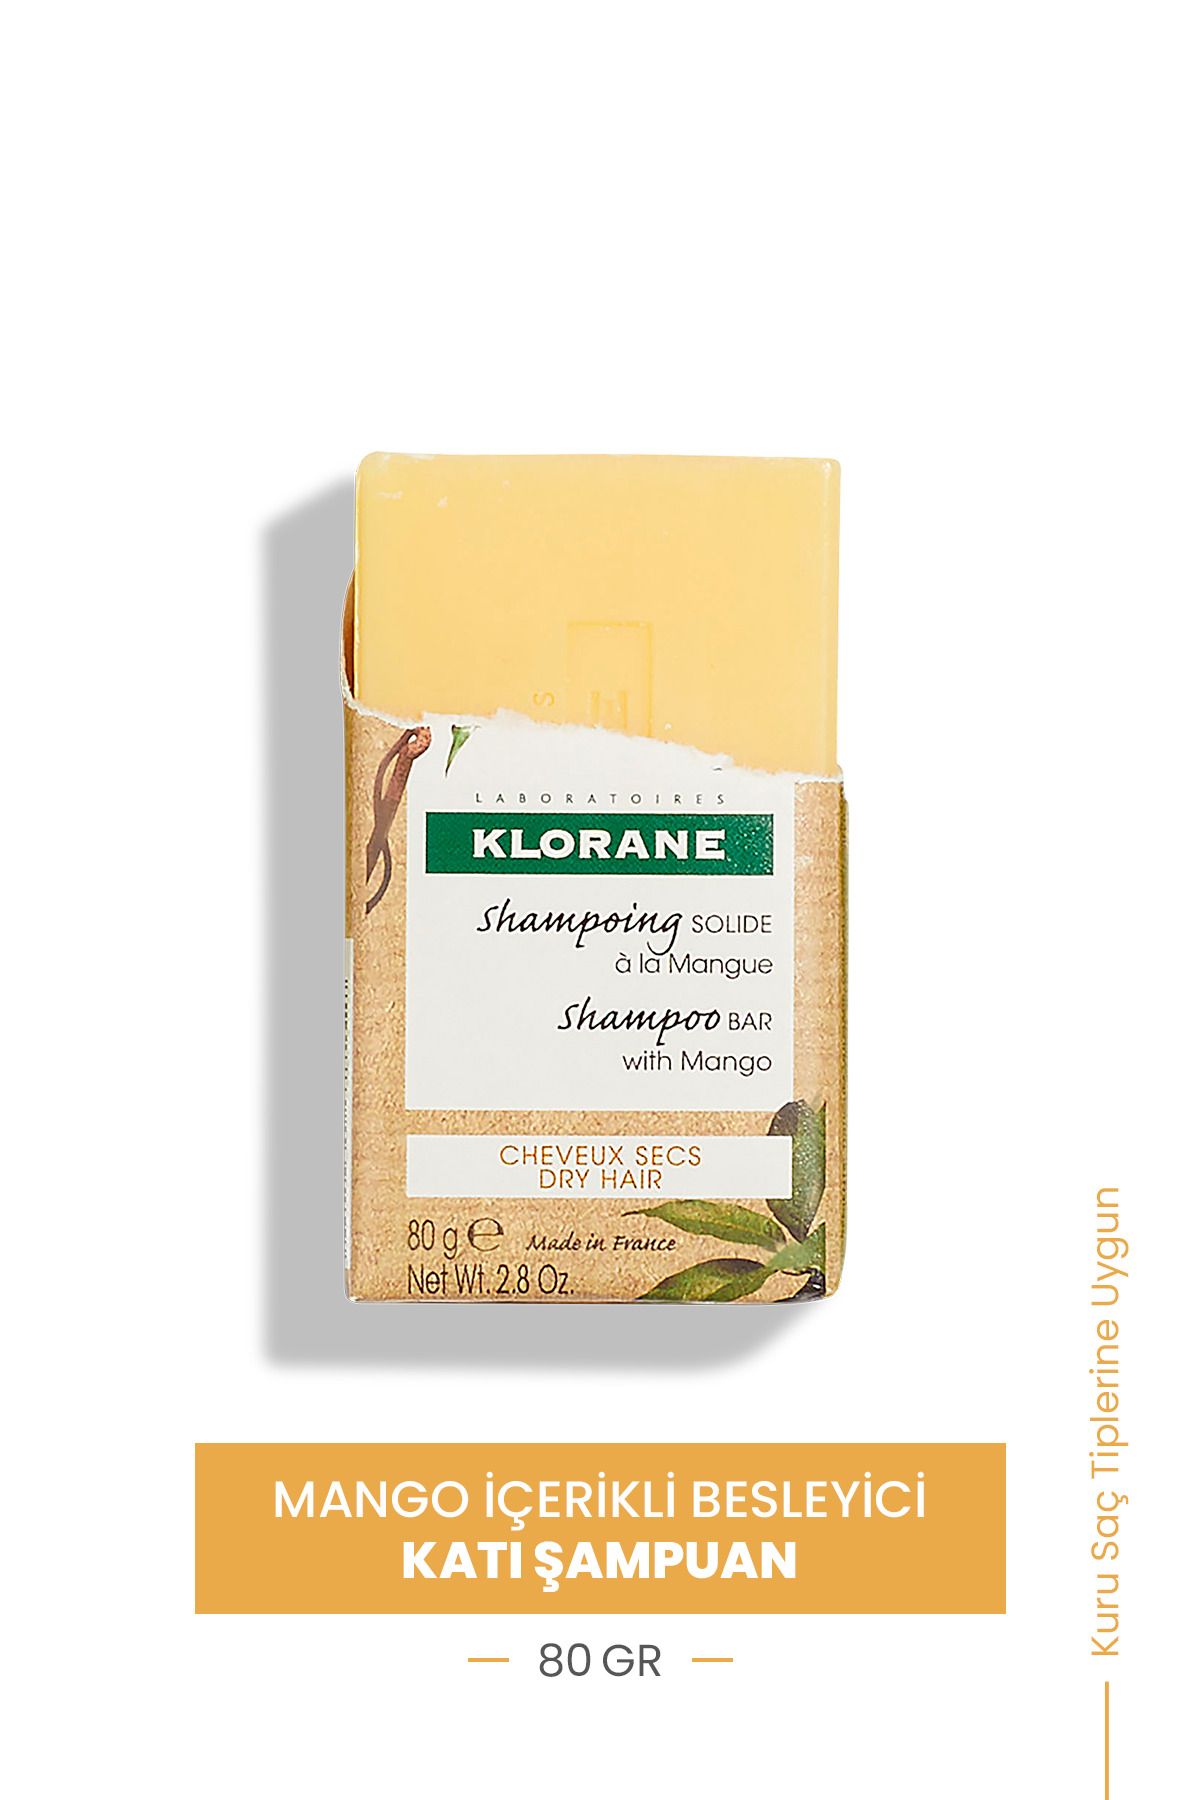 Klorane Mango İçerikli Besleyici Katı Şampuan 80 gr